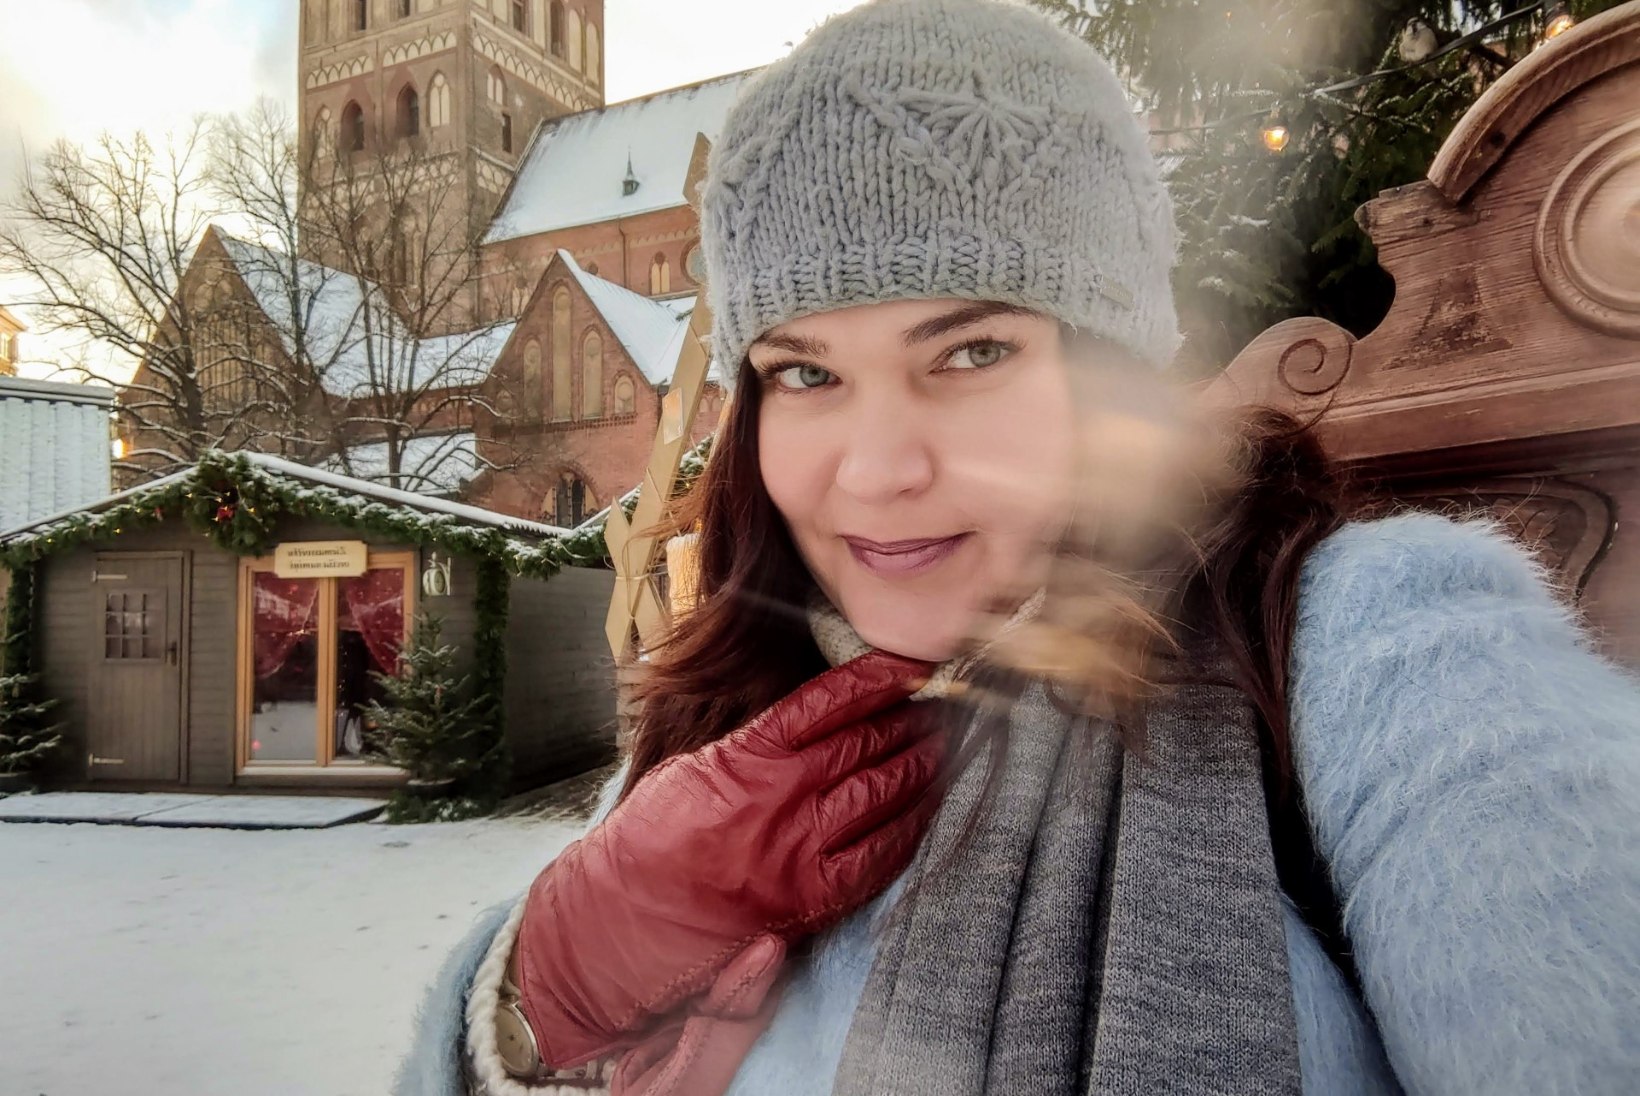 FOTOD JA VIDEO | Riia jõuluturg: üllatavalt muhe, taskukohane ja kompaktne – kindel soovitus minna!